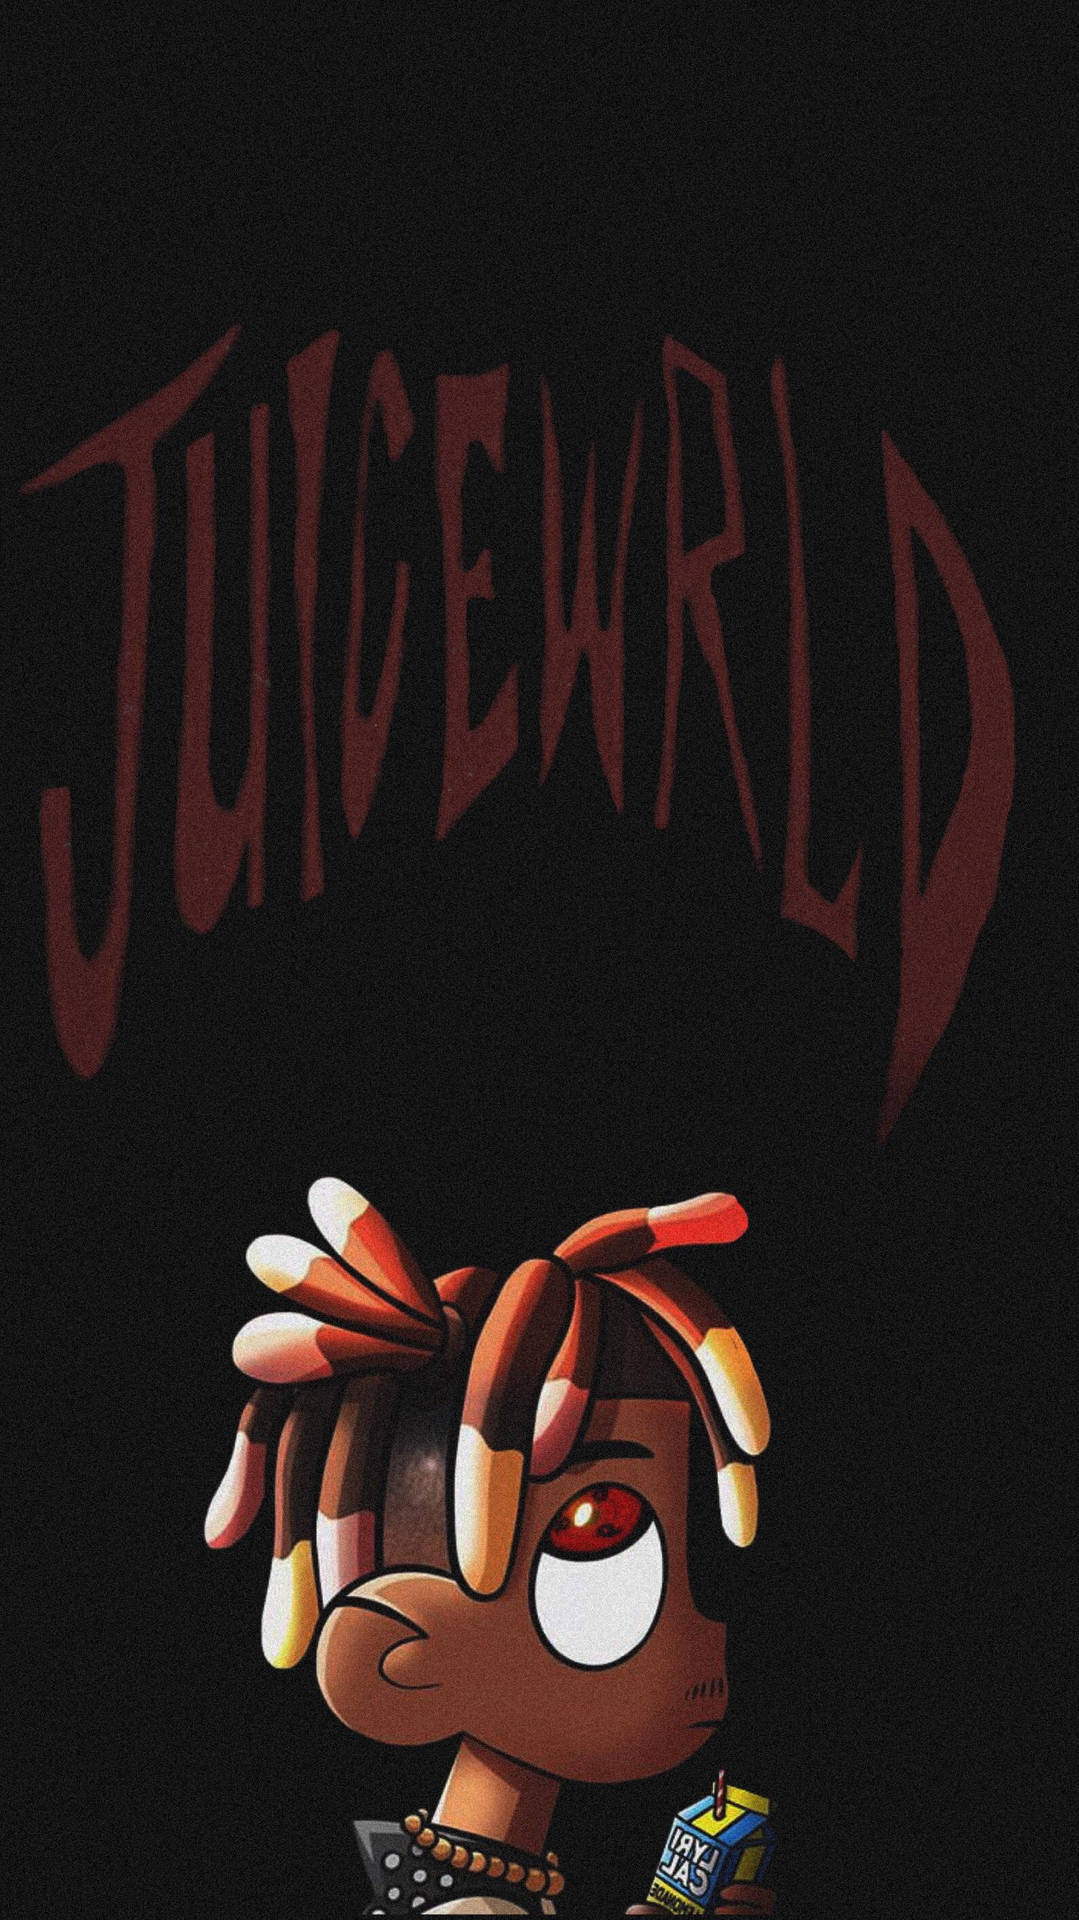 Animated Juice Wrld Cartoon Background